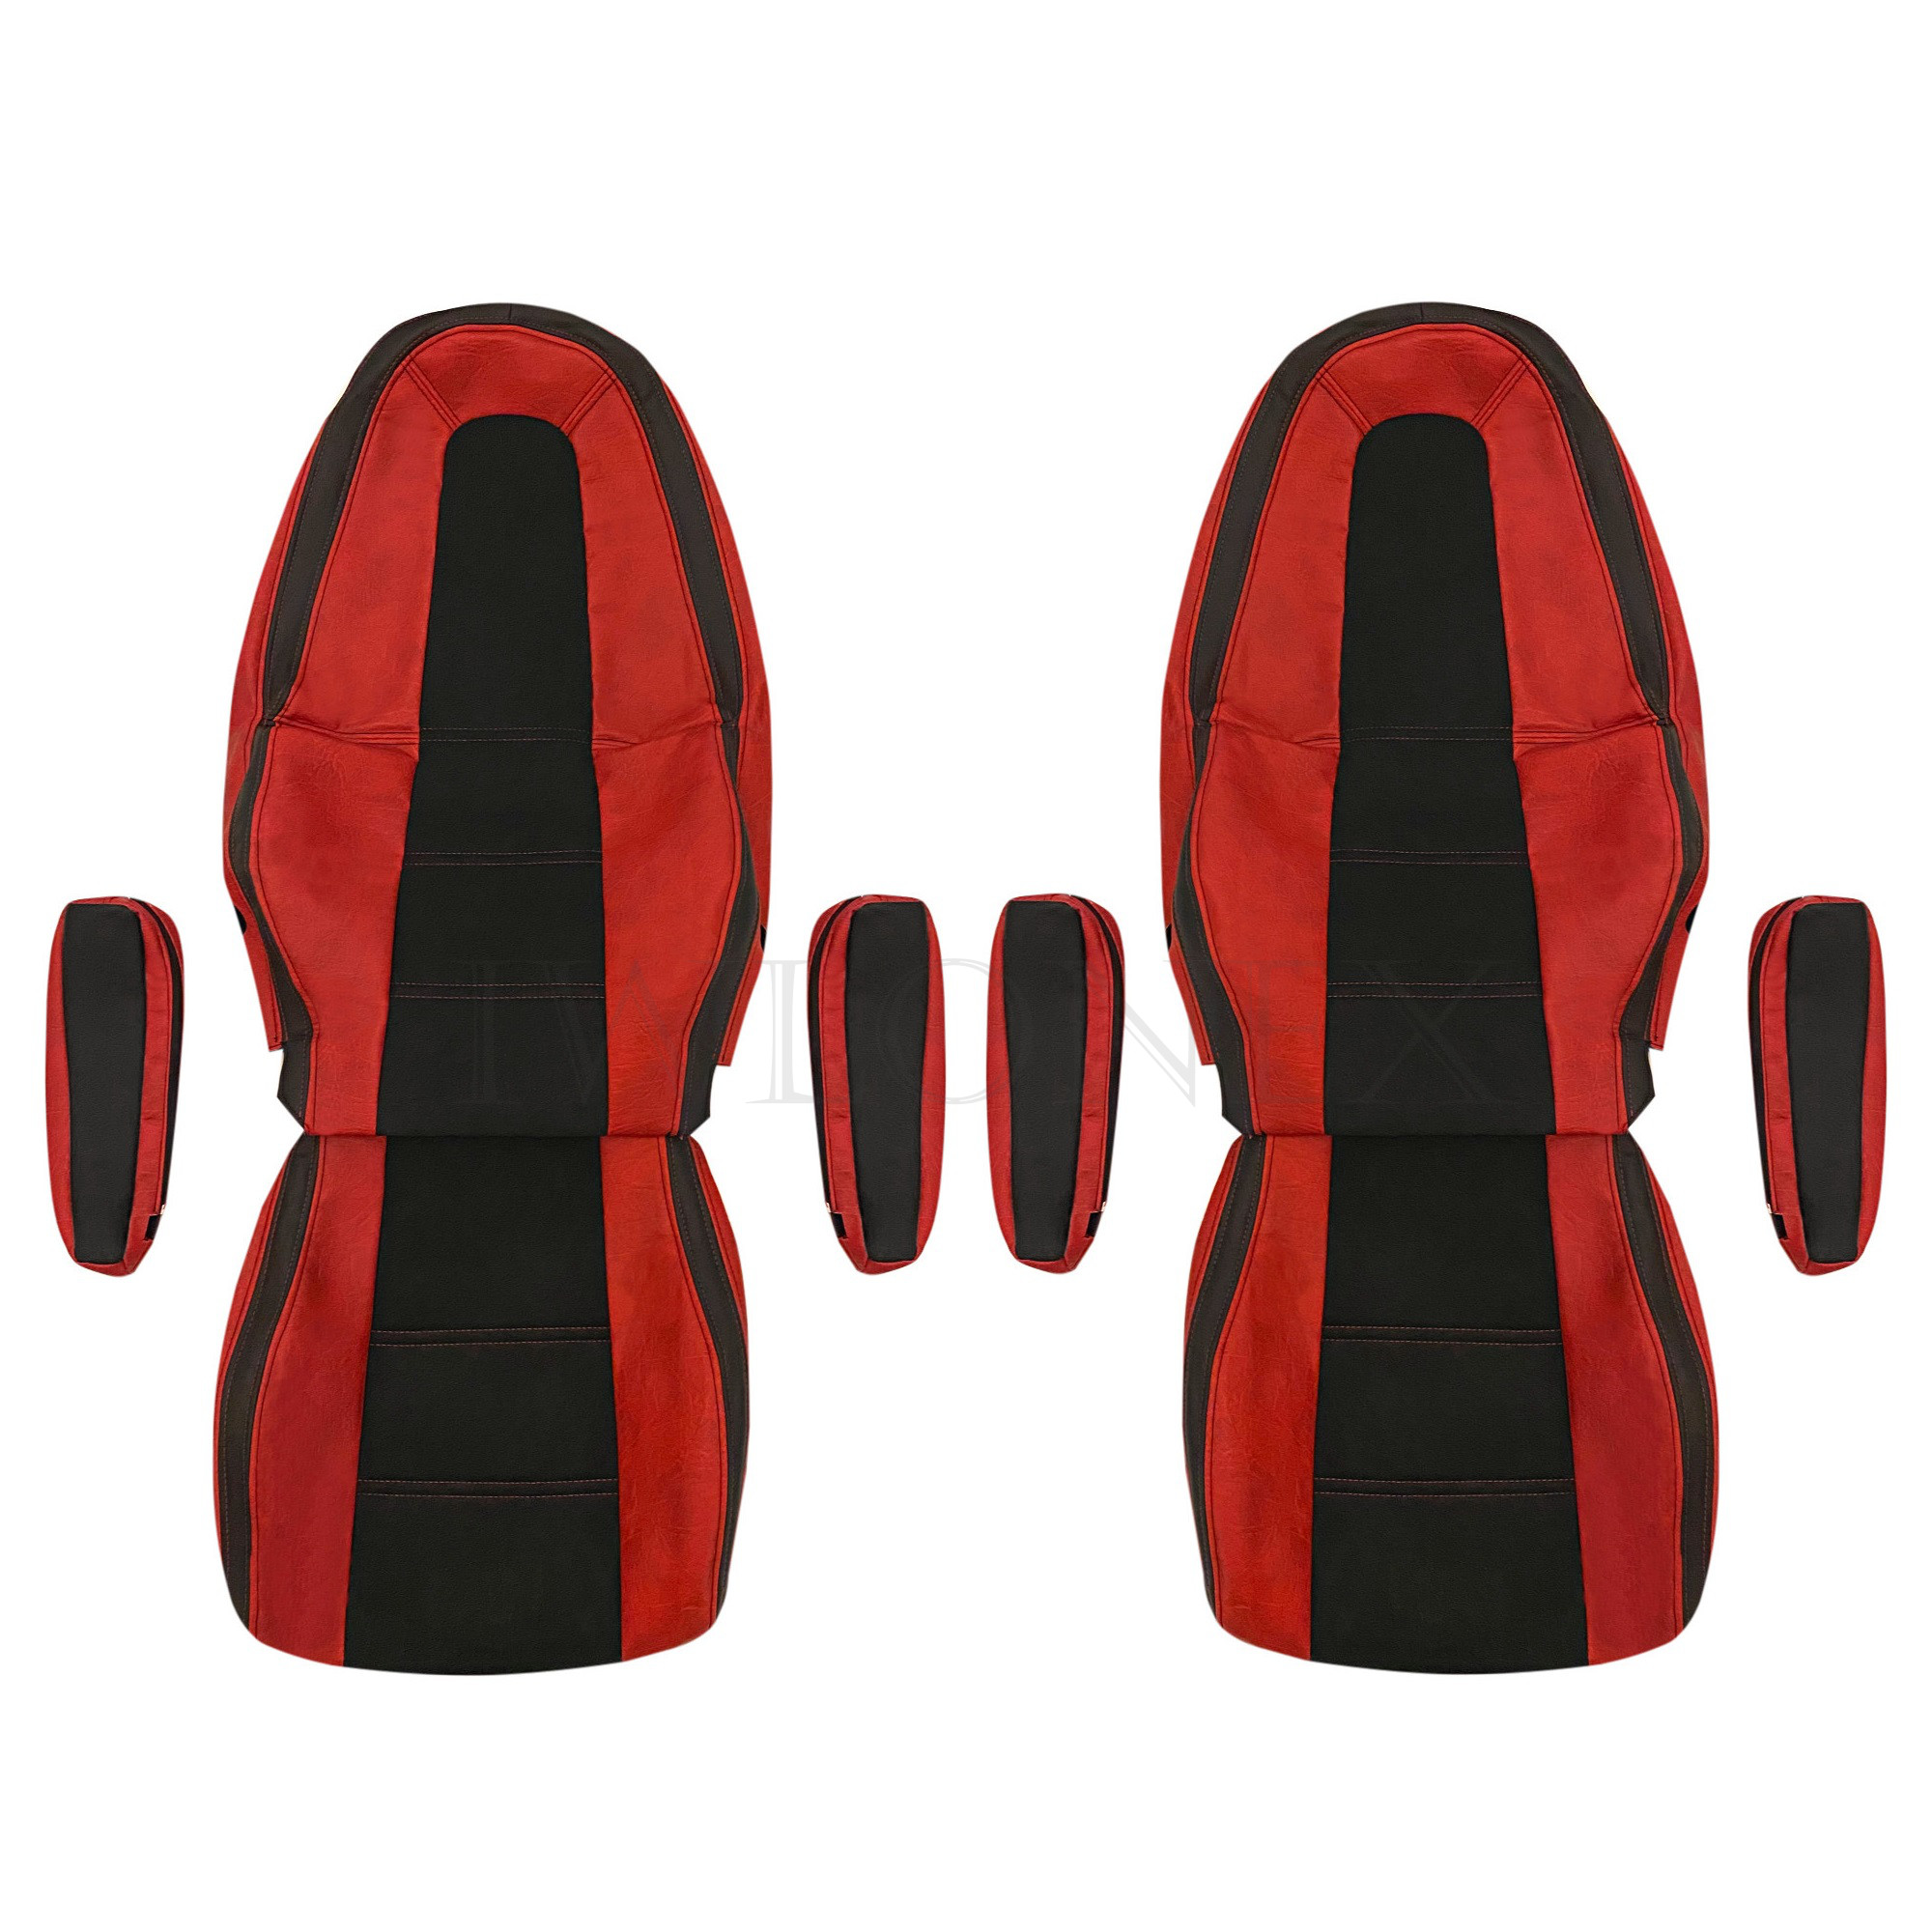 Armaturenbrett Abdeckung aus Kunstleder in Schwarz-Rot passend für